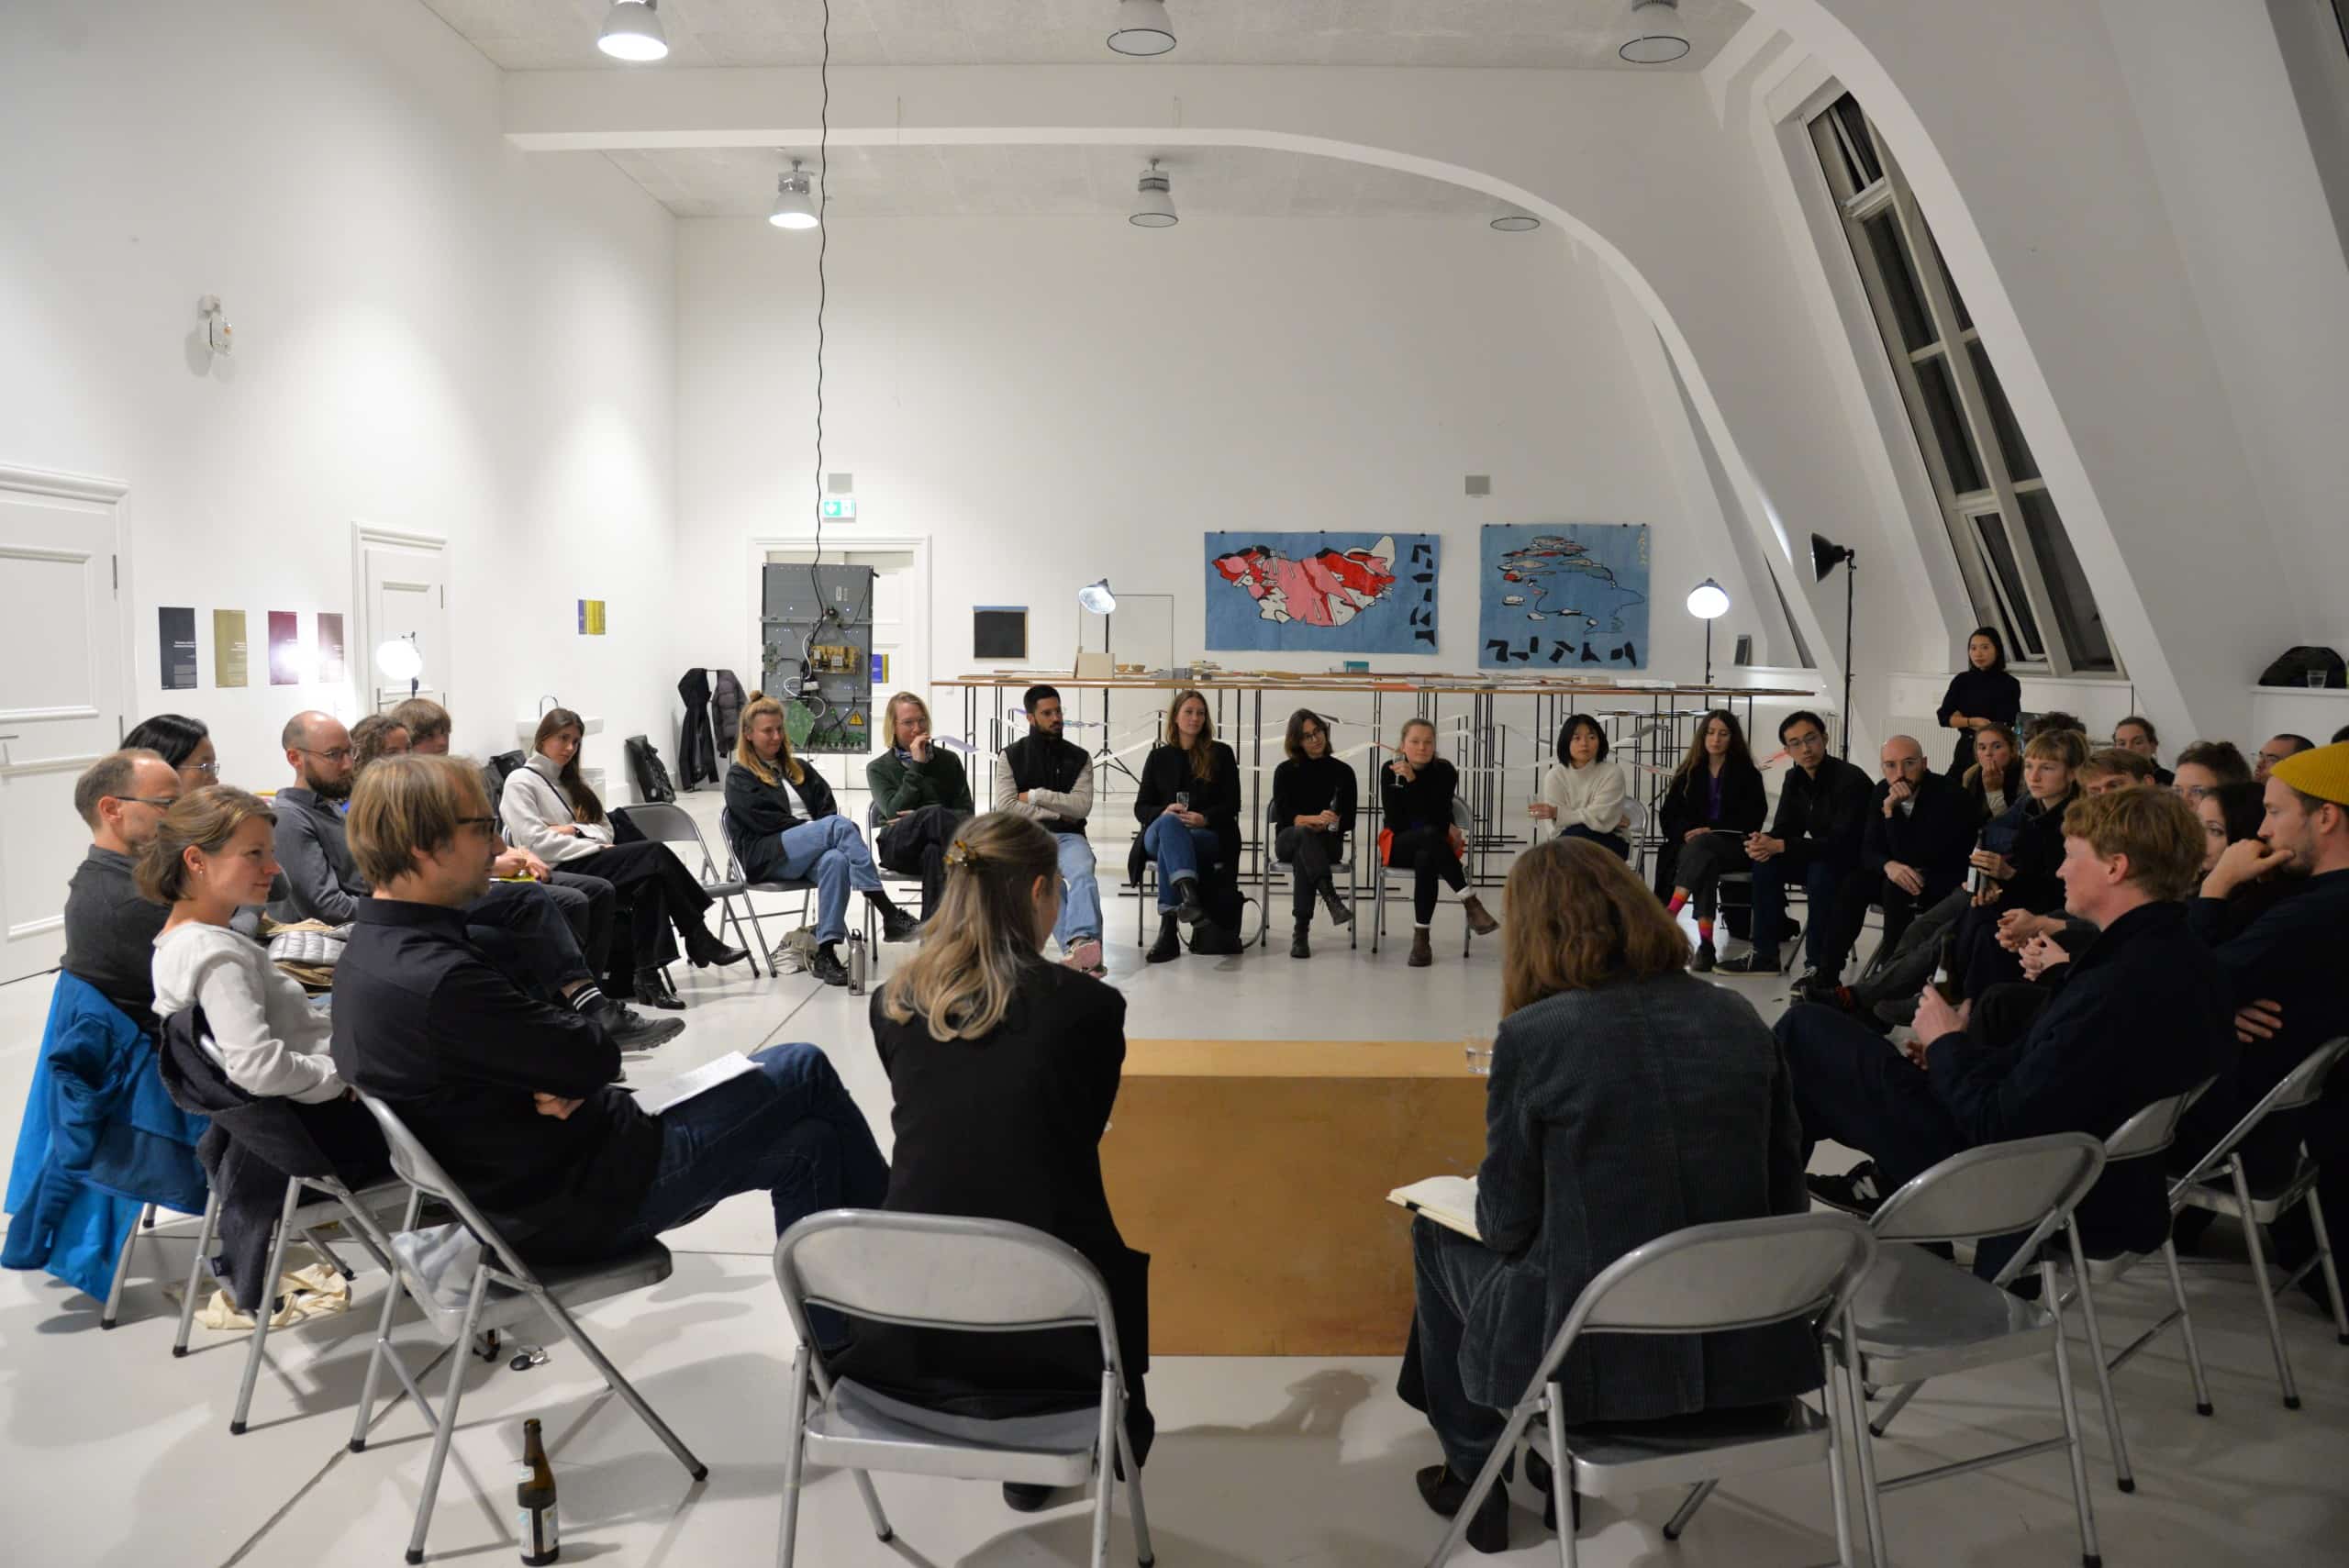 Im Stuhlkreis sitzen diverse Teilnehmer:innen des Symposiums in einem weiß gestrichenen Raum. Im Hintergrund ausgestellte Arbeiten.